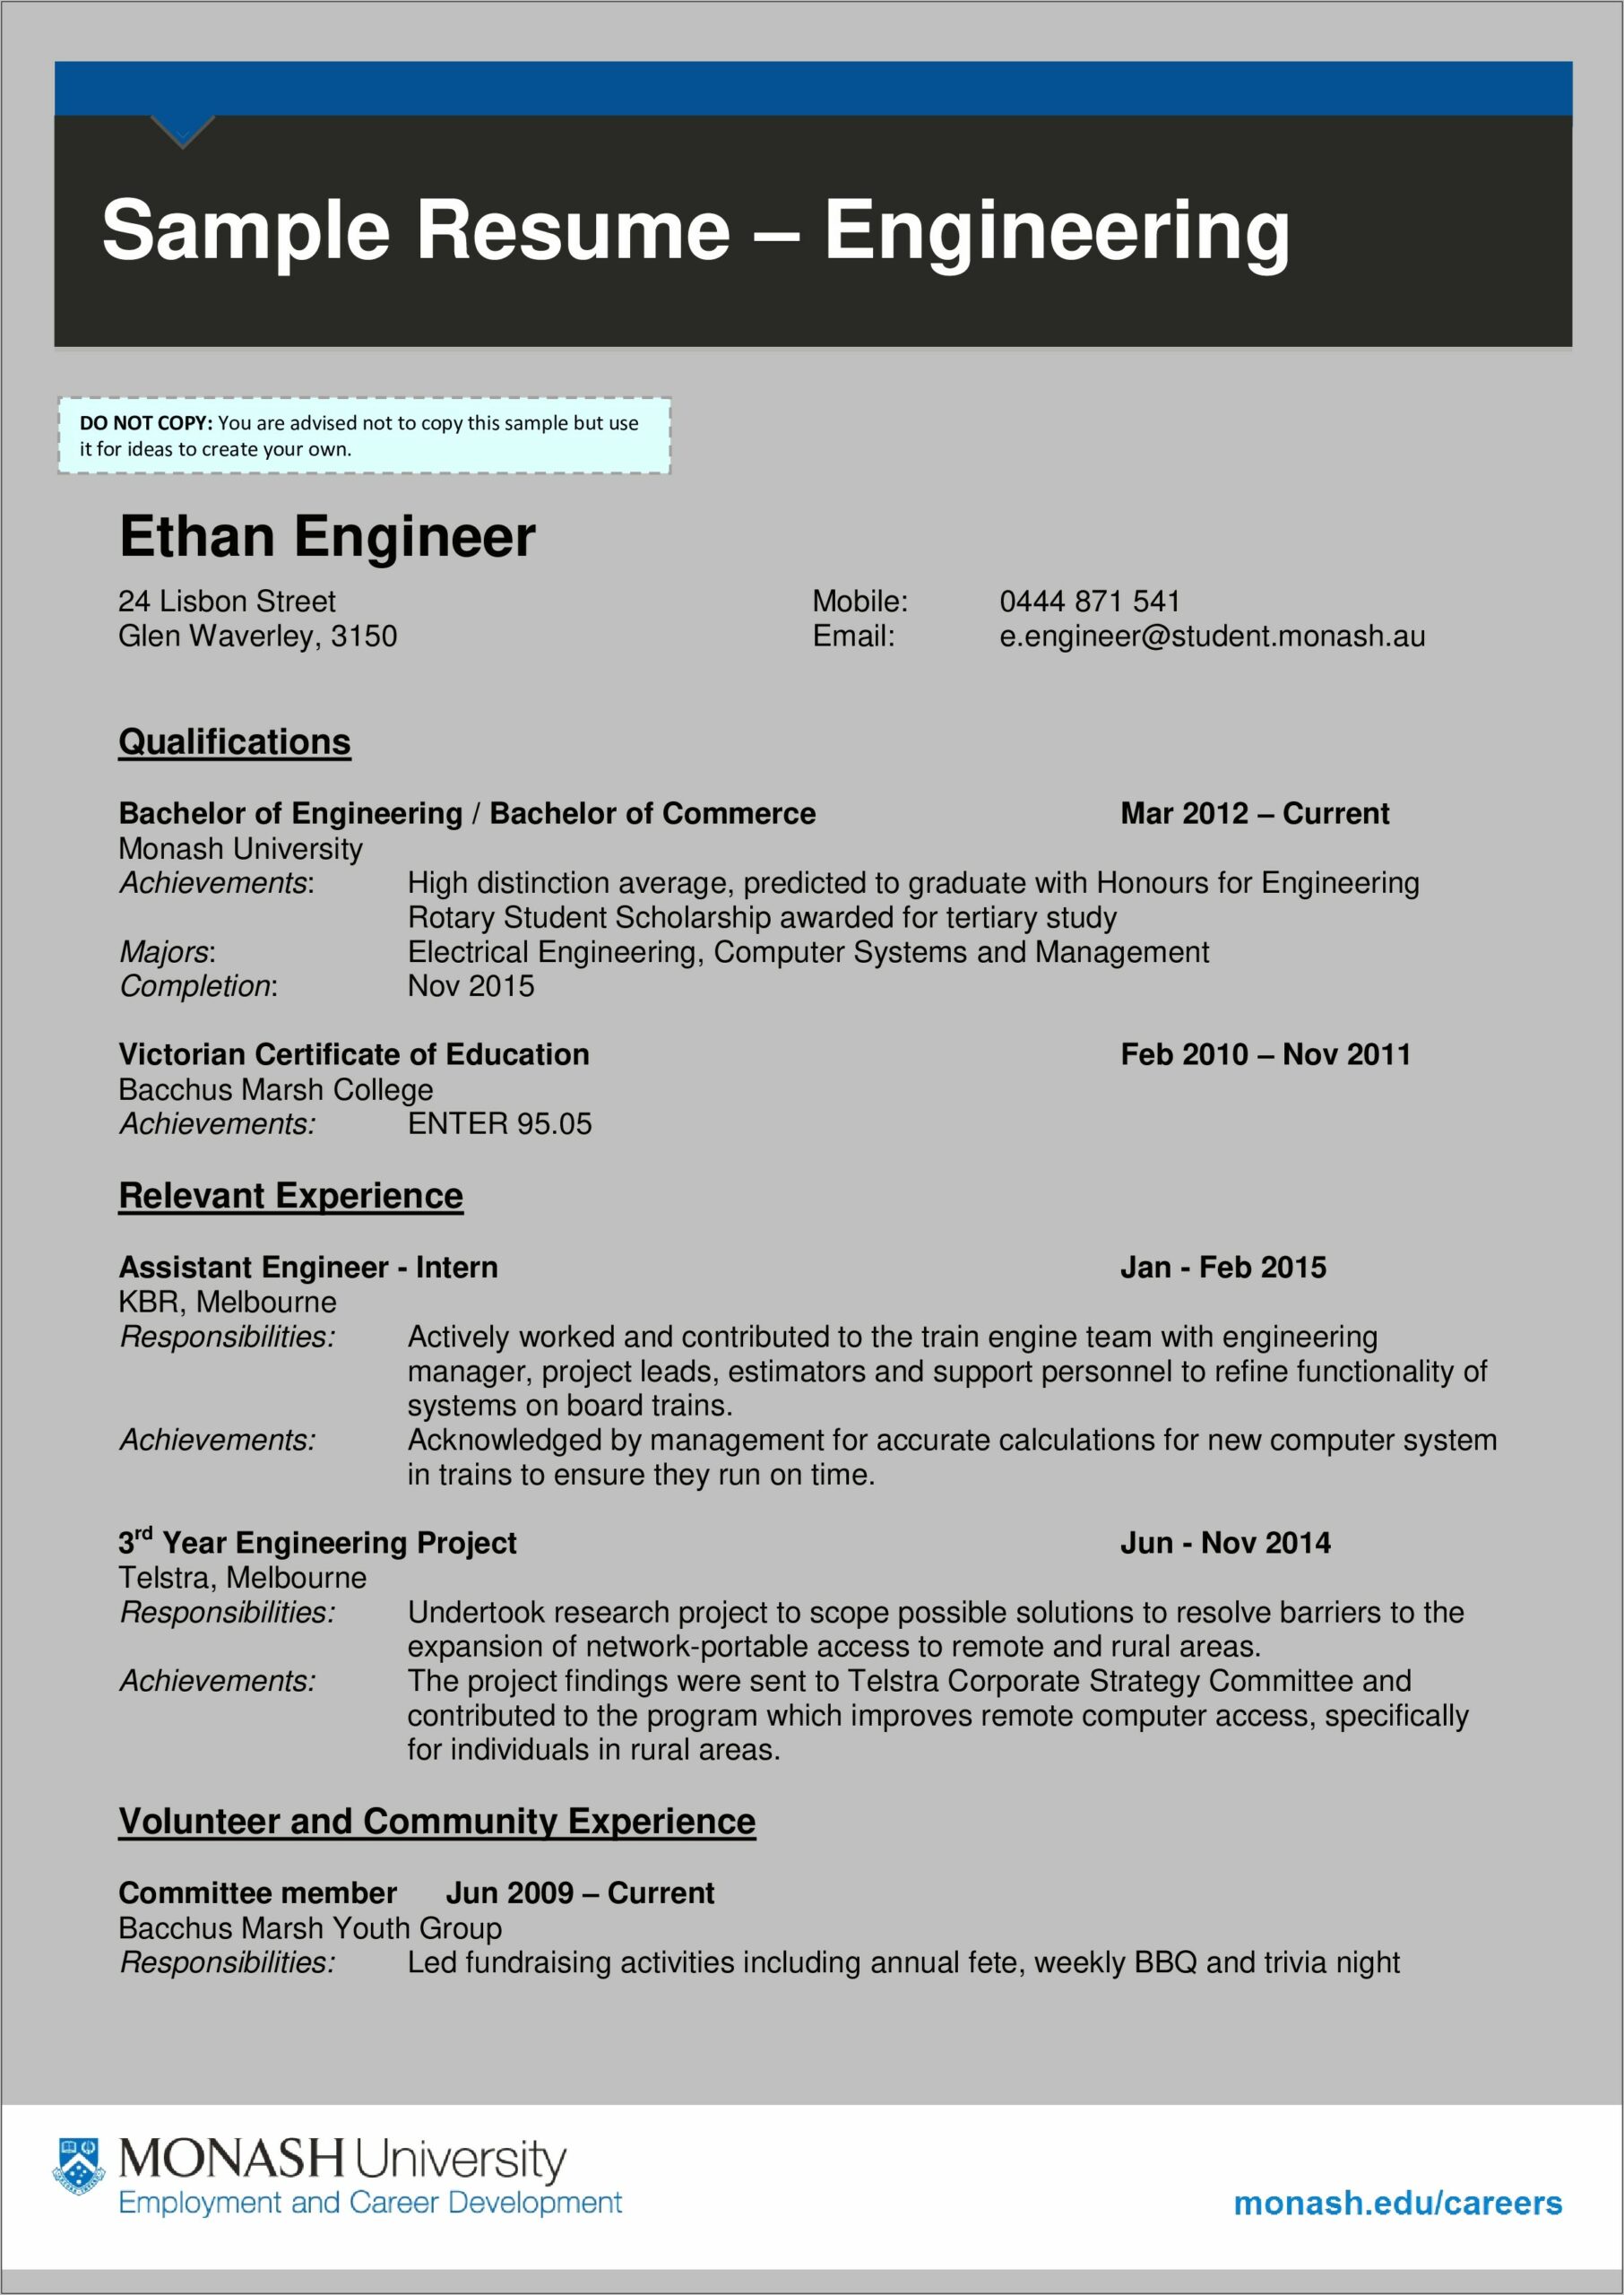 Sample Resume Format For Engineer Fresher